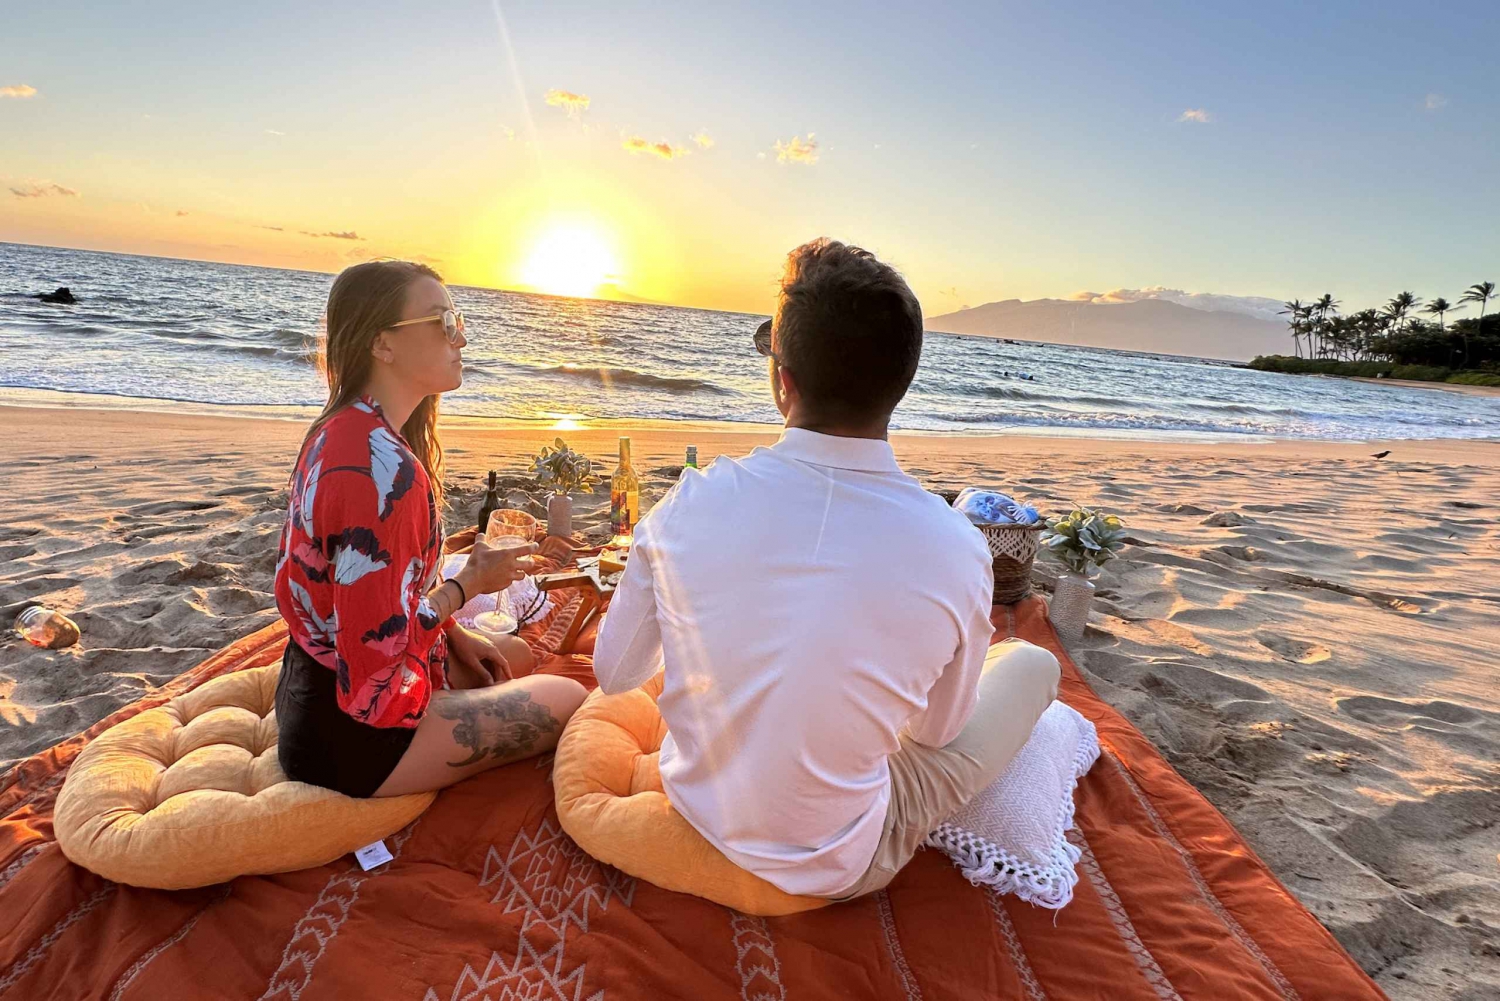 Maui: Charcuterie Board & Sunset at Hidden Beach with Photos